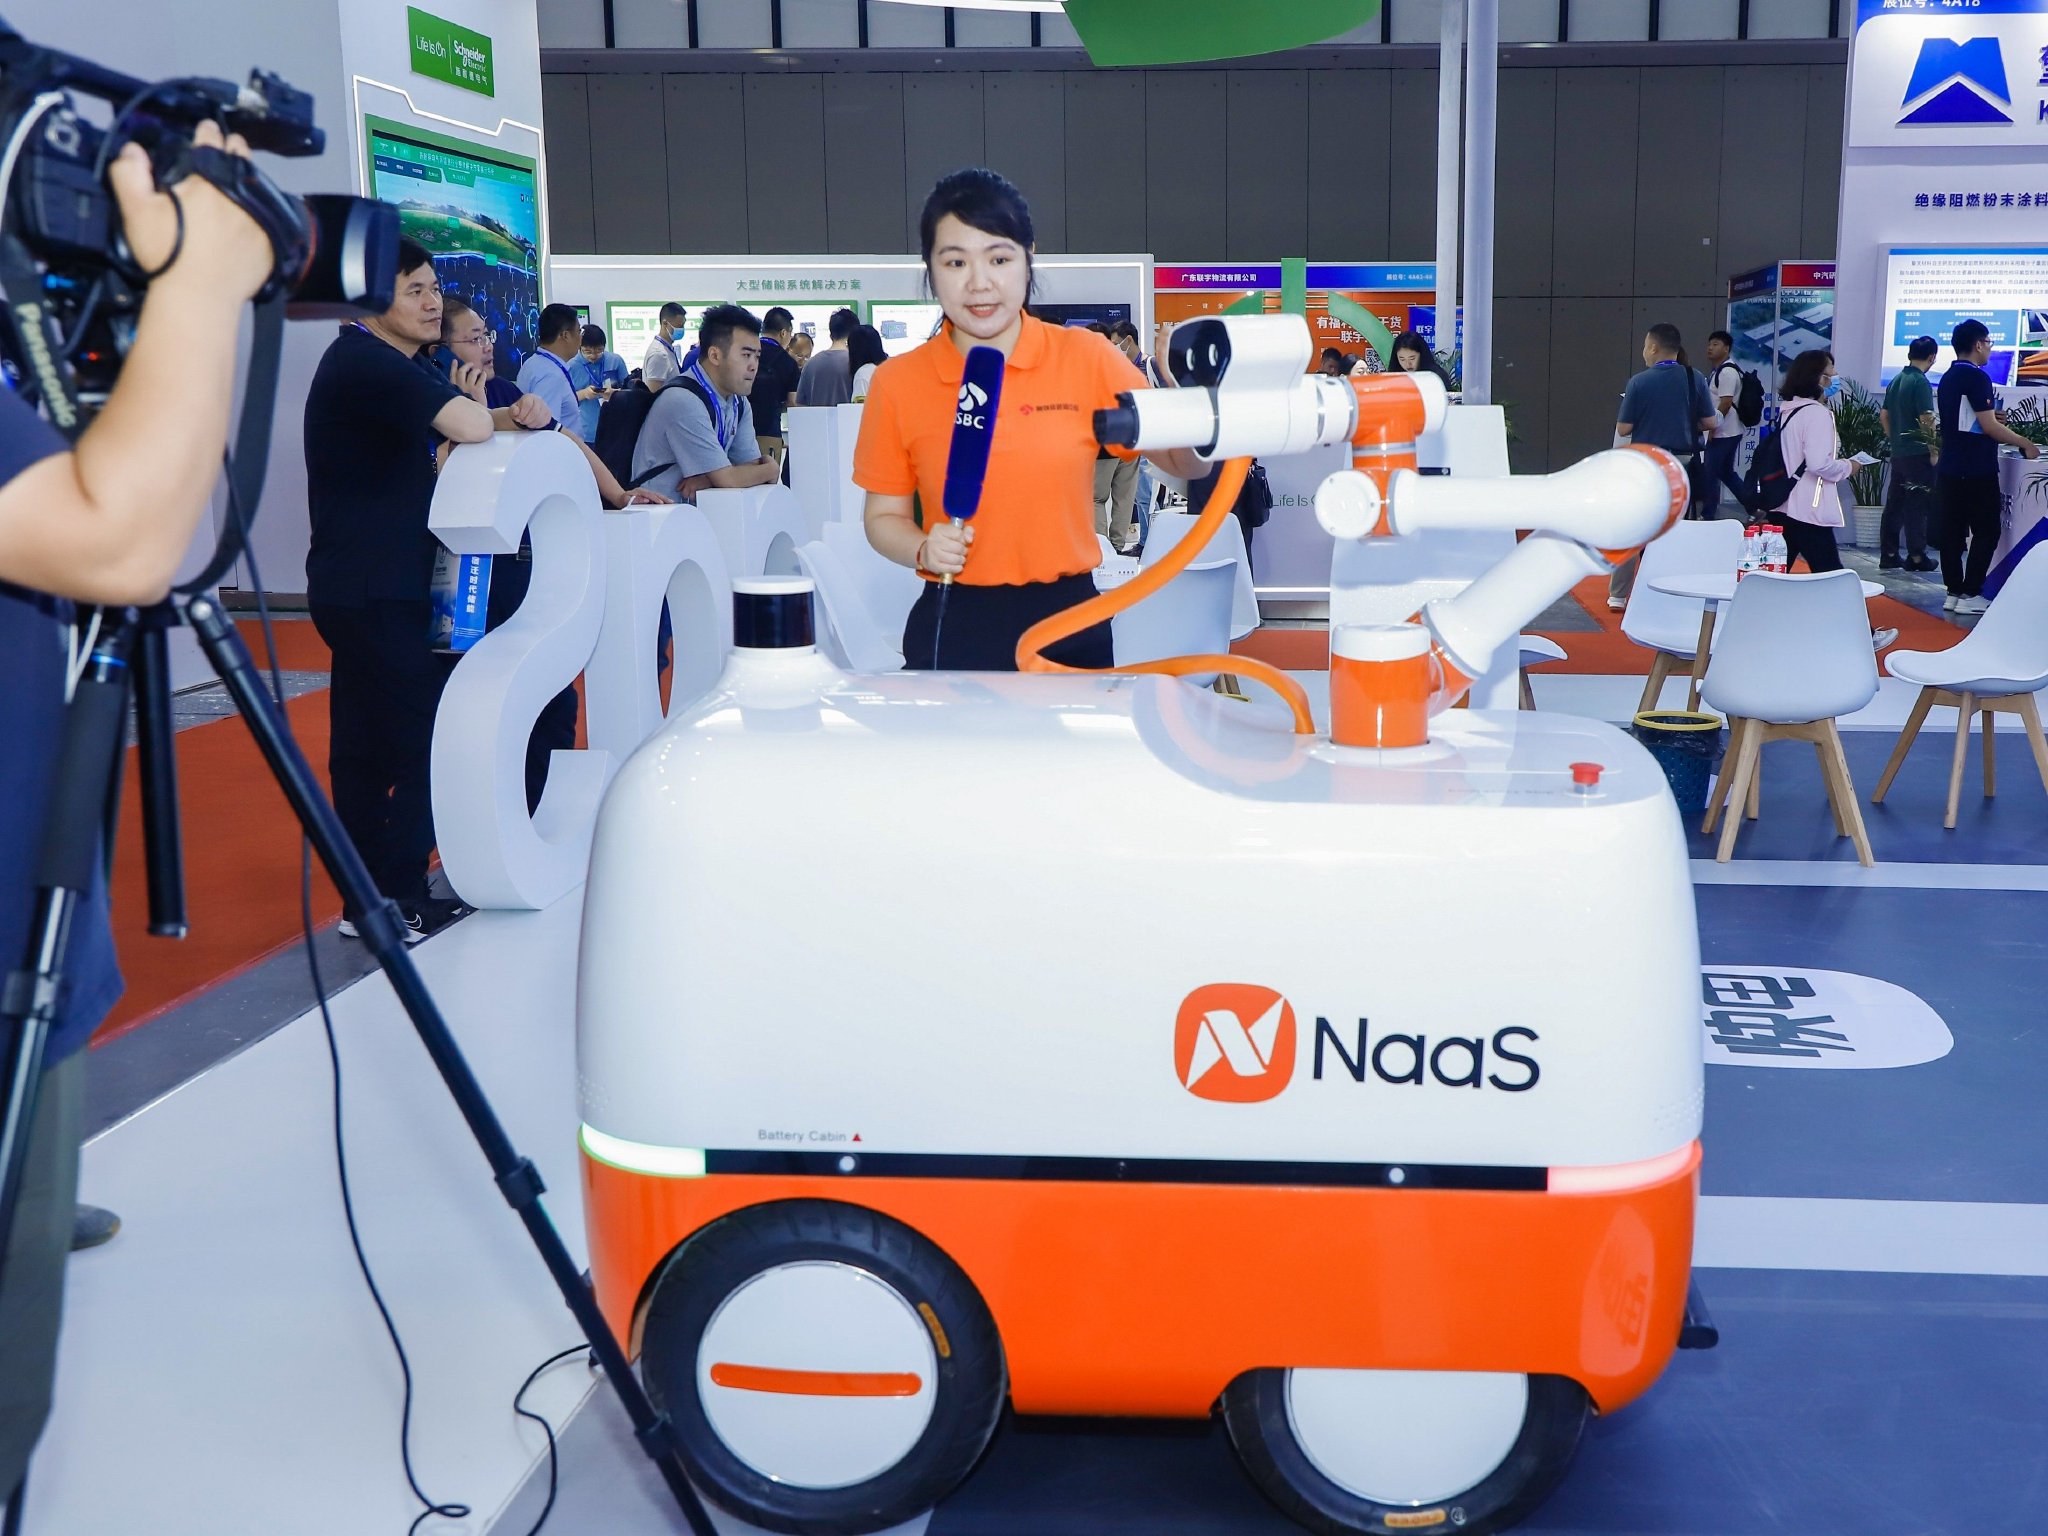 江苏卫视现场采访能链自主研发的自动充电机器人产品